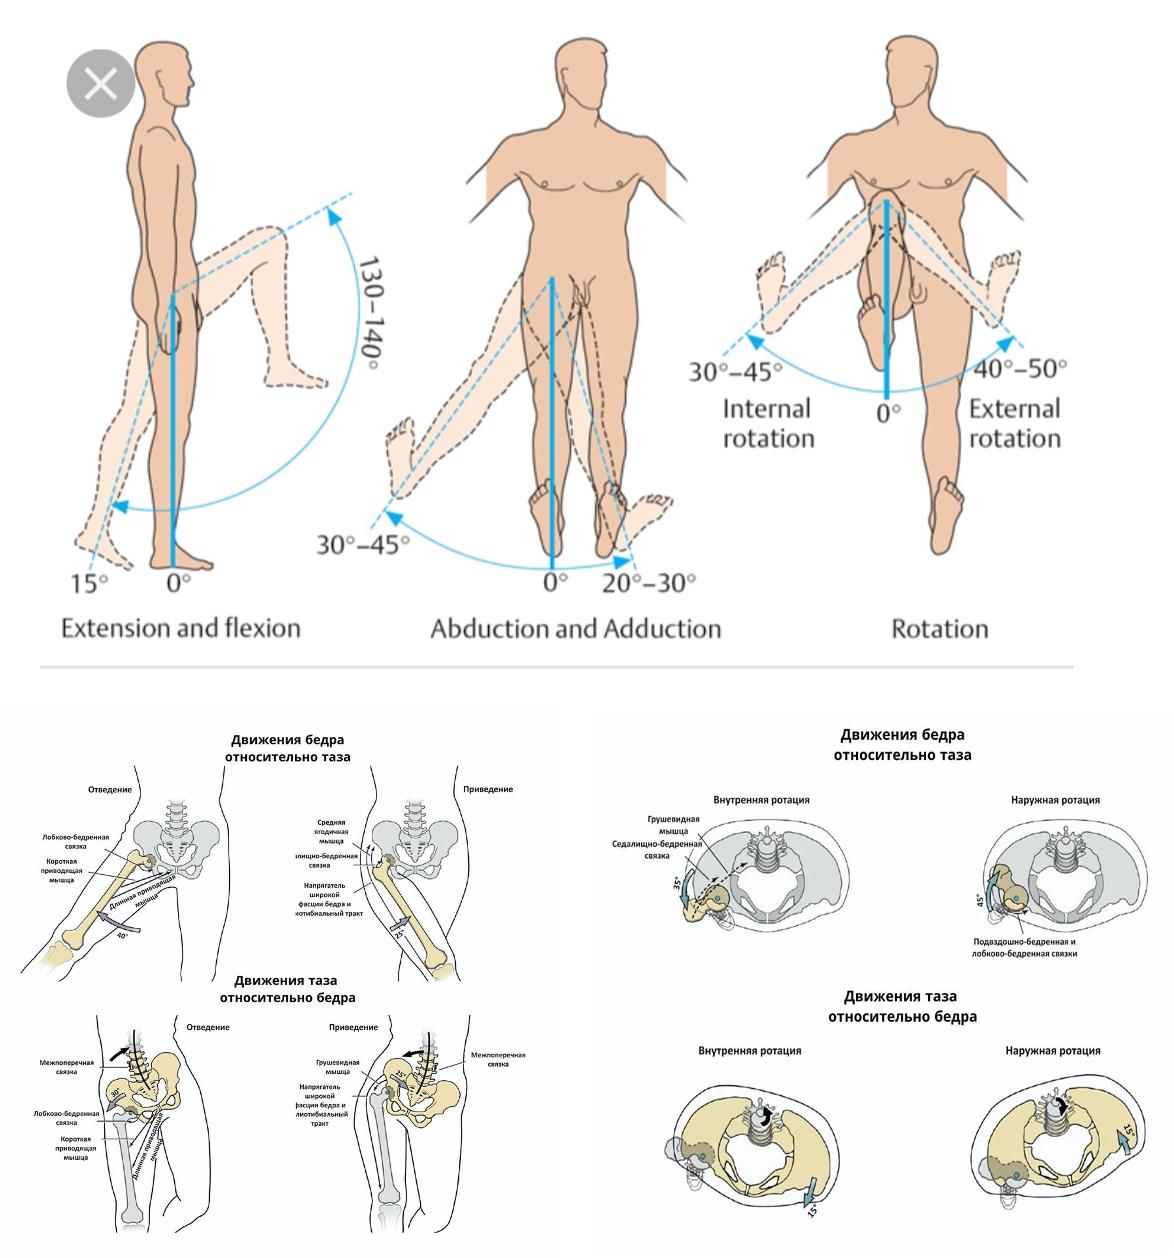 Ограничение движения в коленном суставе. ТБС тазобедренного сустава. Нормы подвижности ТБС. Объём движений в тазобедренном суставе в норме. Ограничение движений в тазобедренном суставе в градусах.